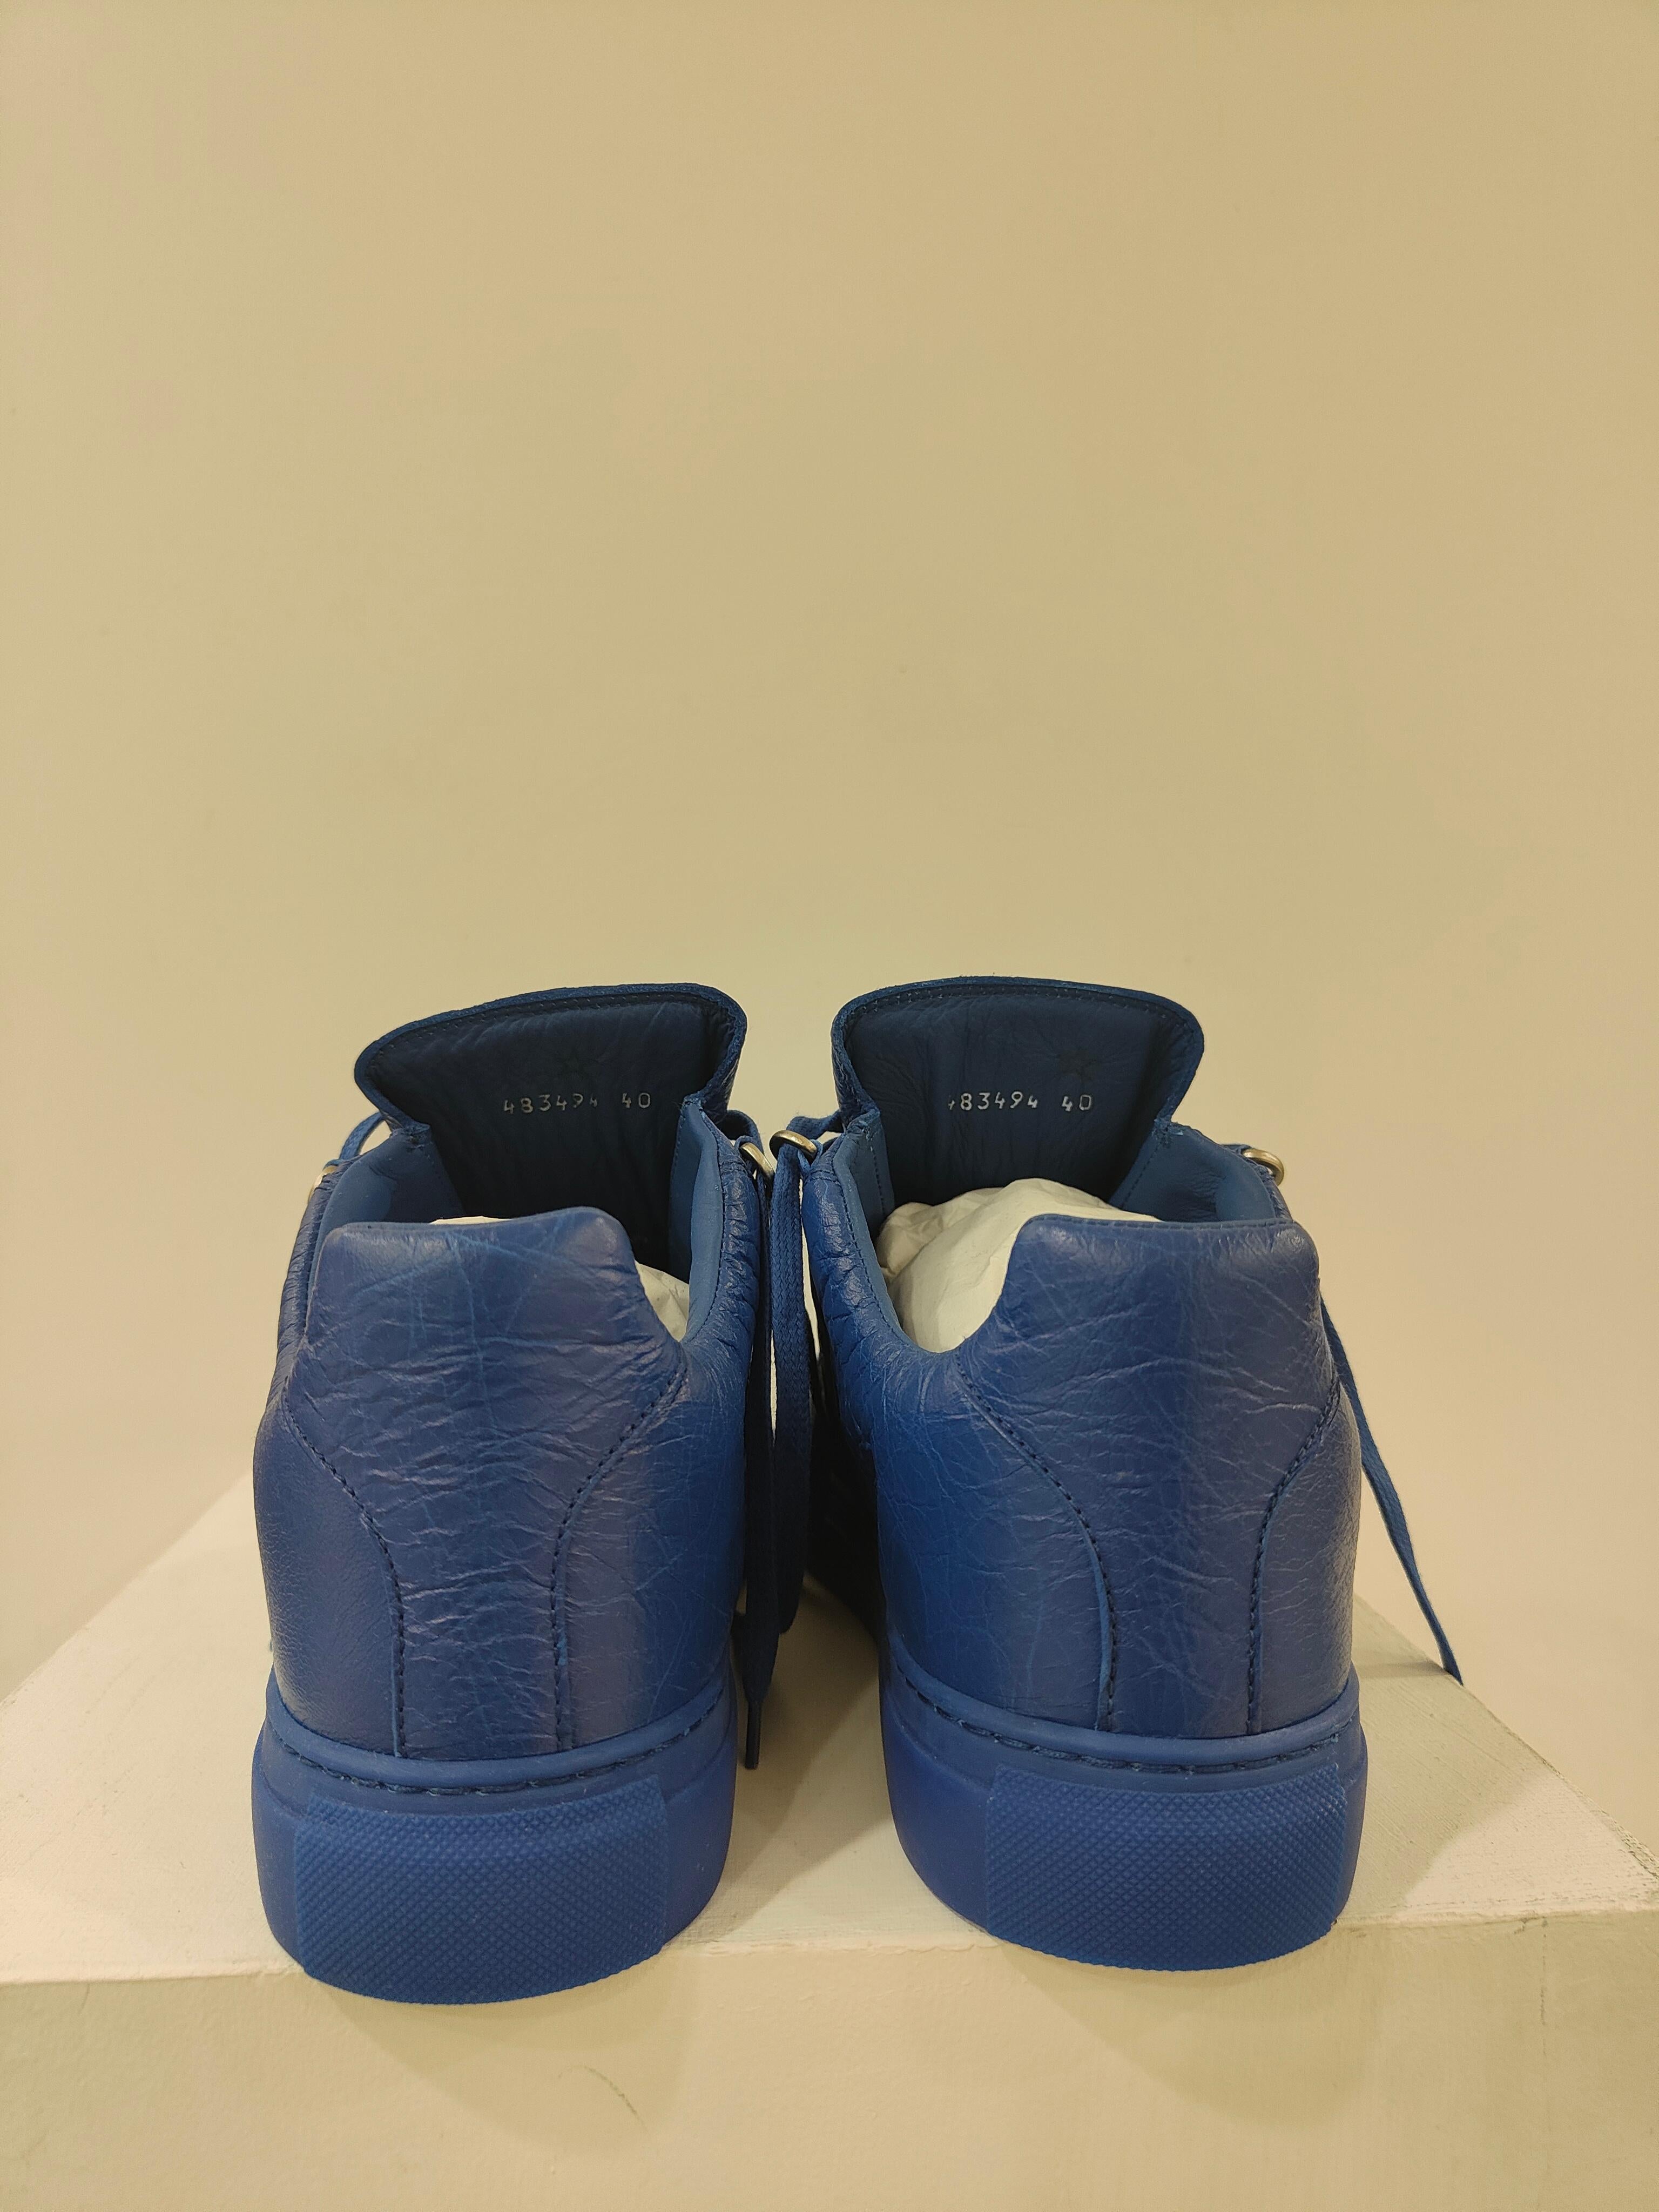 blue balenciagas shoes